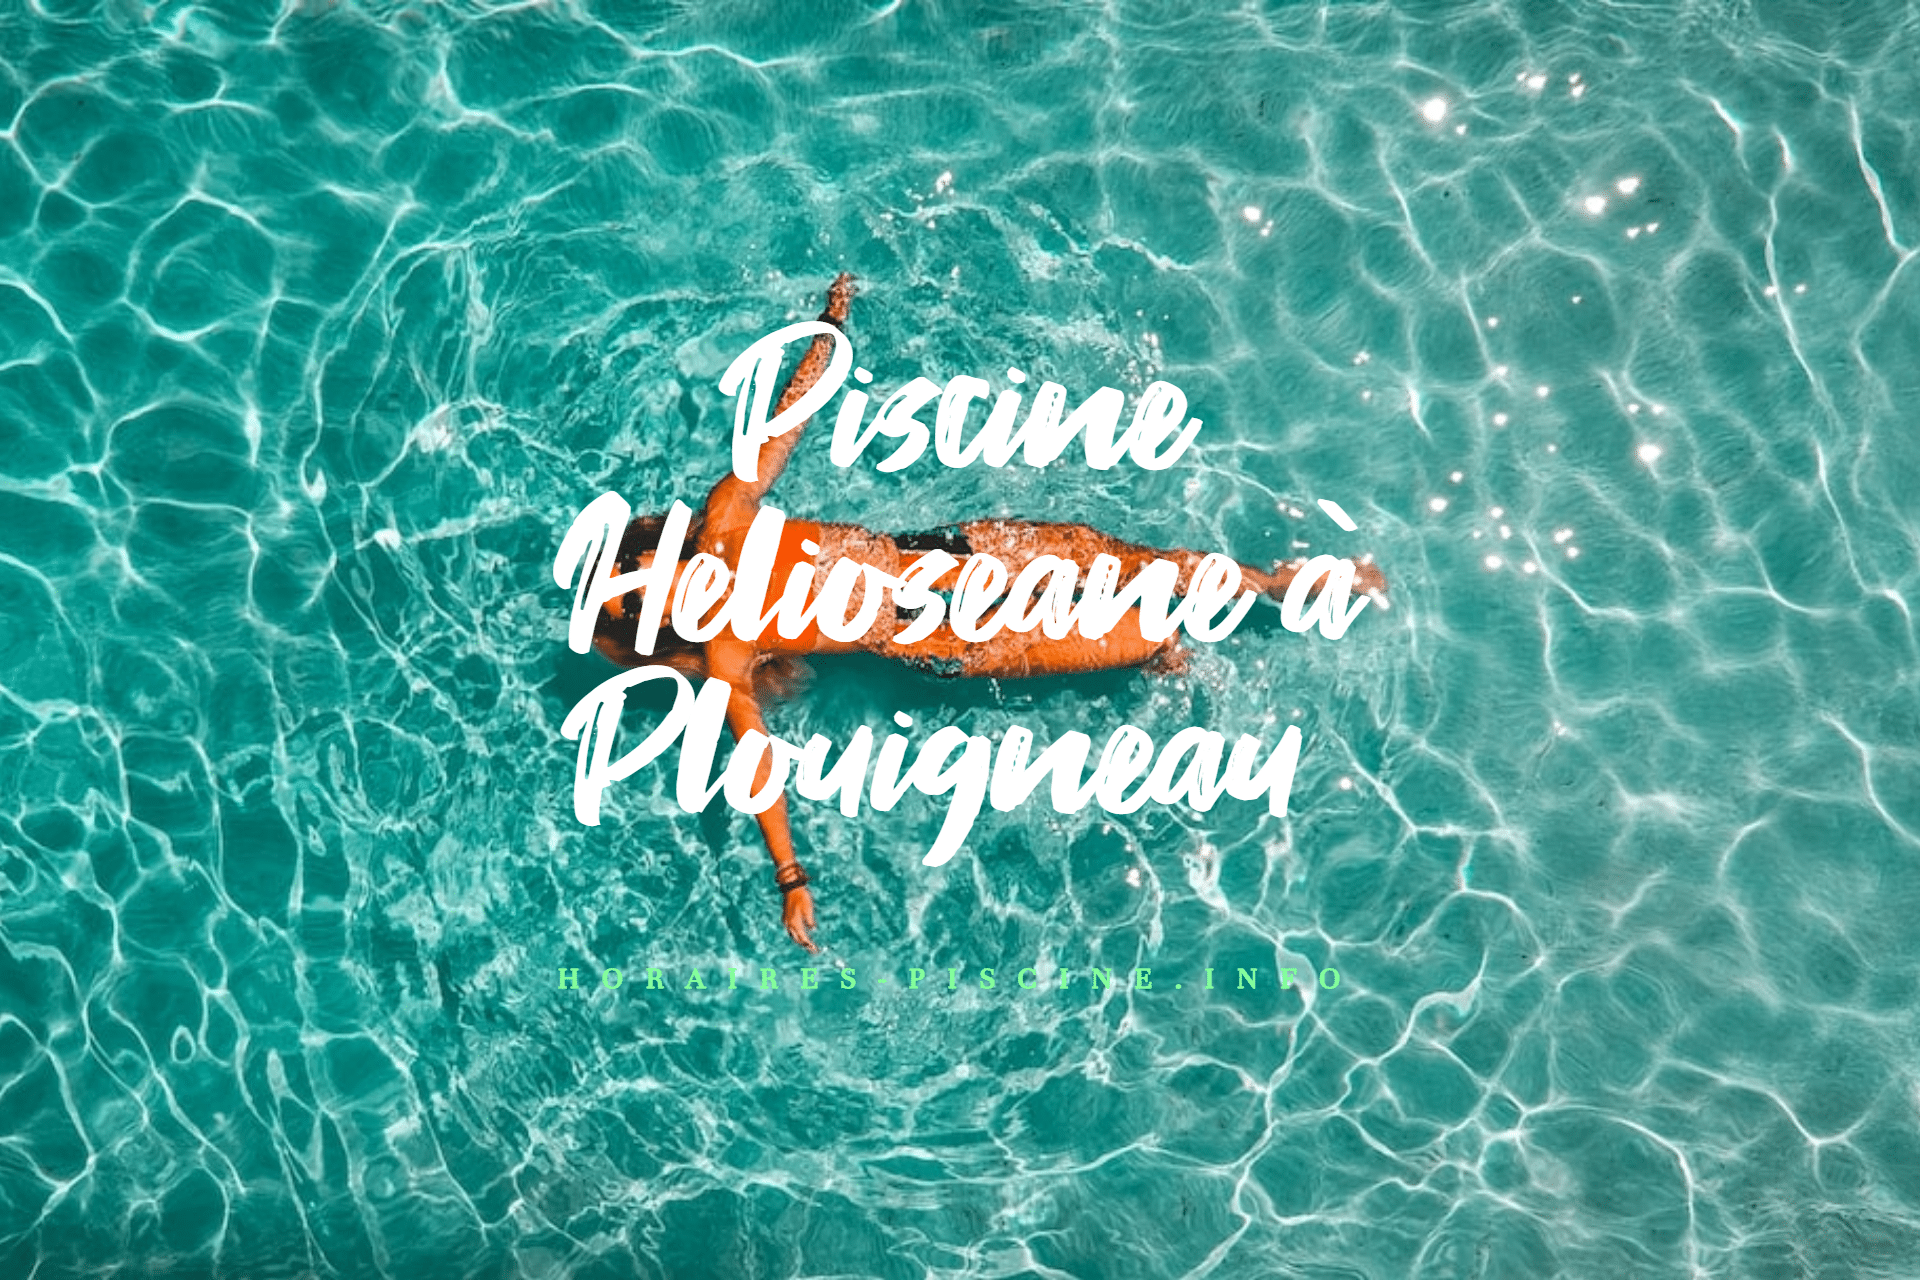 Piscine Helioseane à Plouigneau